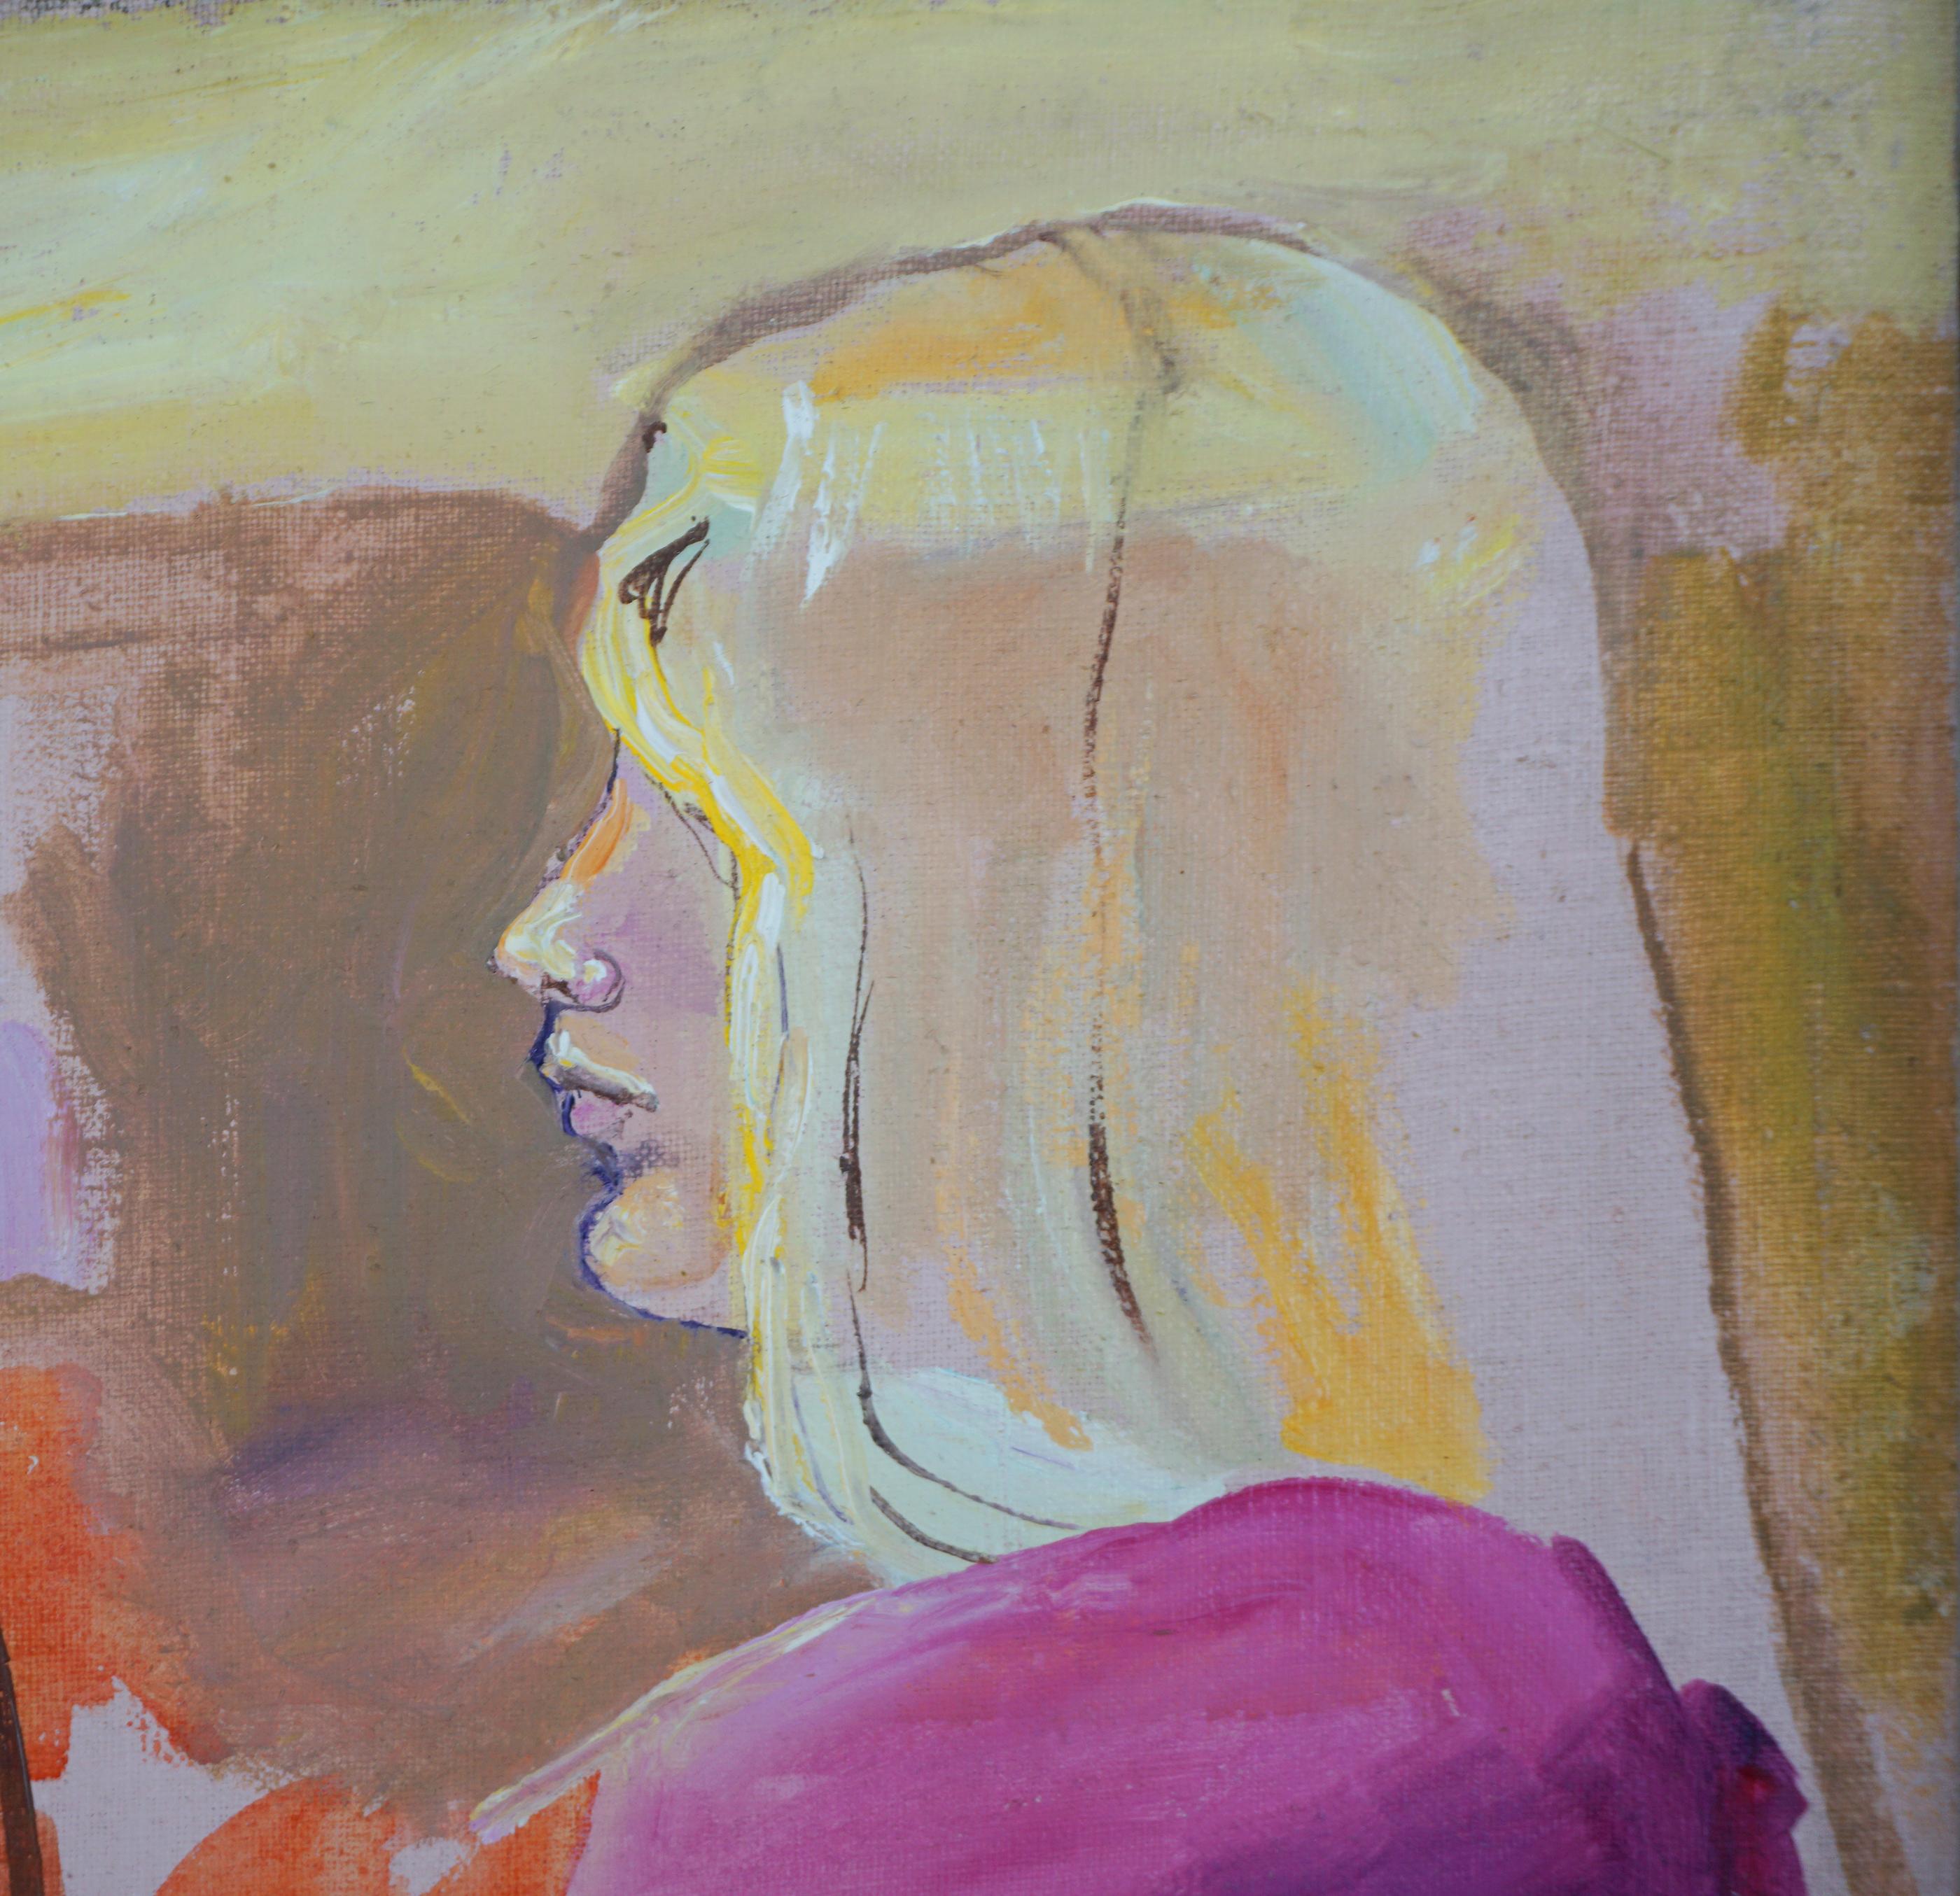 Figurative Studie über Frauen der amerikanischen Malerin Patricia Gren Hayes (geb. 1932). Blonde, langhaarige Frau in Latzhose, Seitenansicht derselben Frau und eine weitere Seitenansichtstudie einer Brünetten, um 1970.
